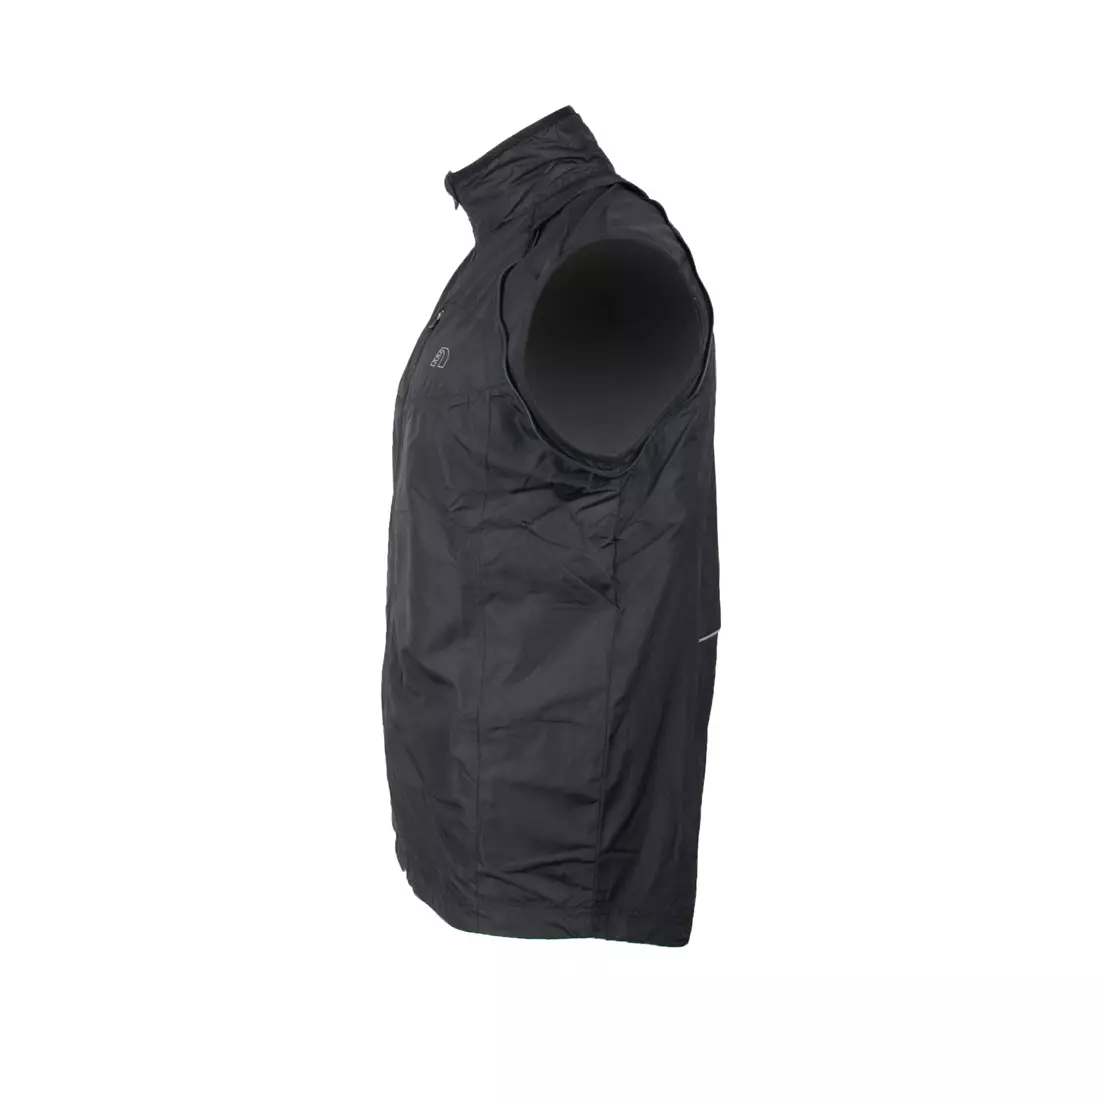 NEWLINE BASE THERMAL JACKET - běžecká bunda, odepínací rukávy 14015-060